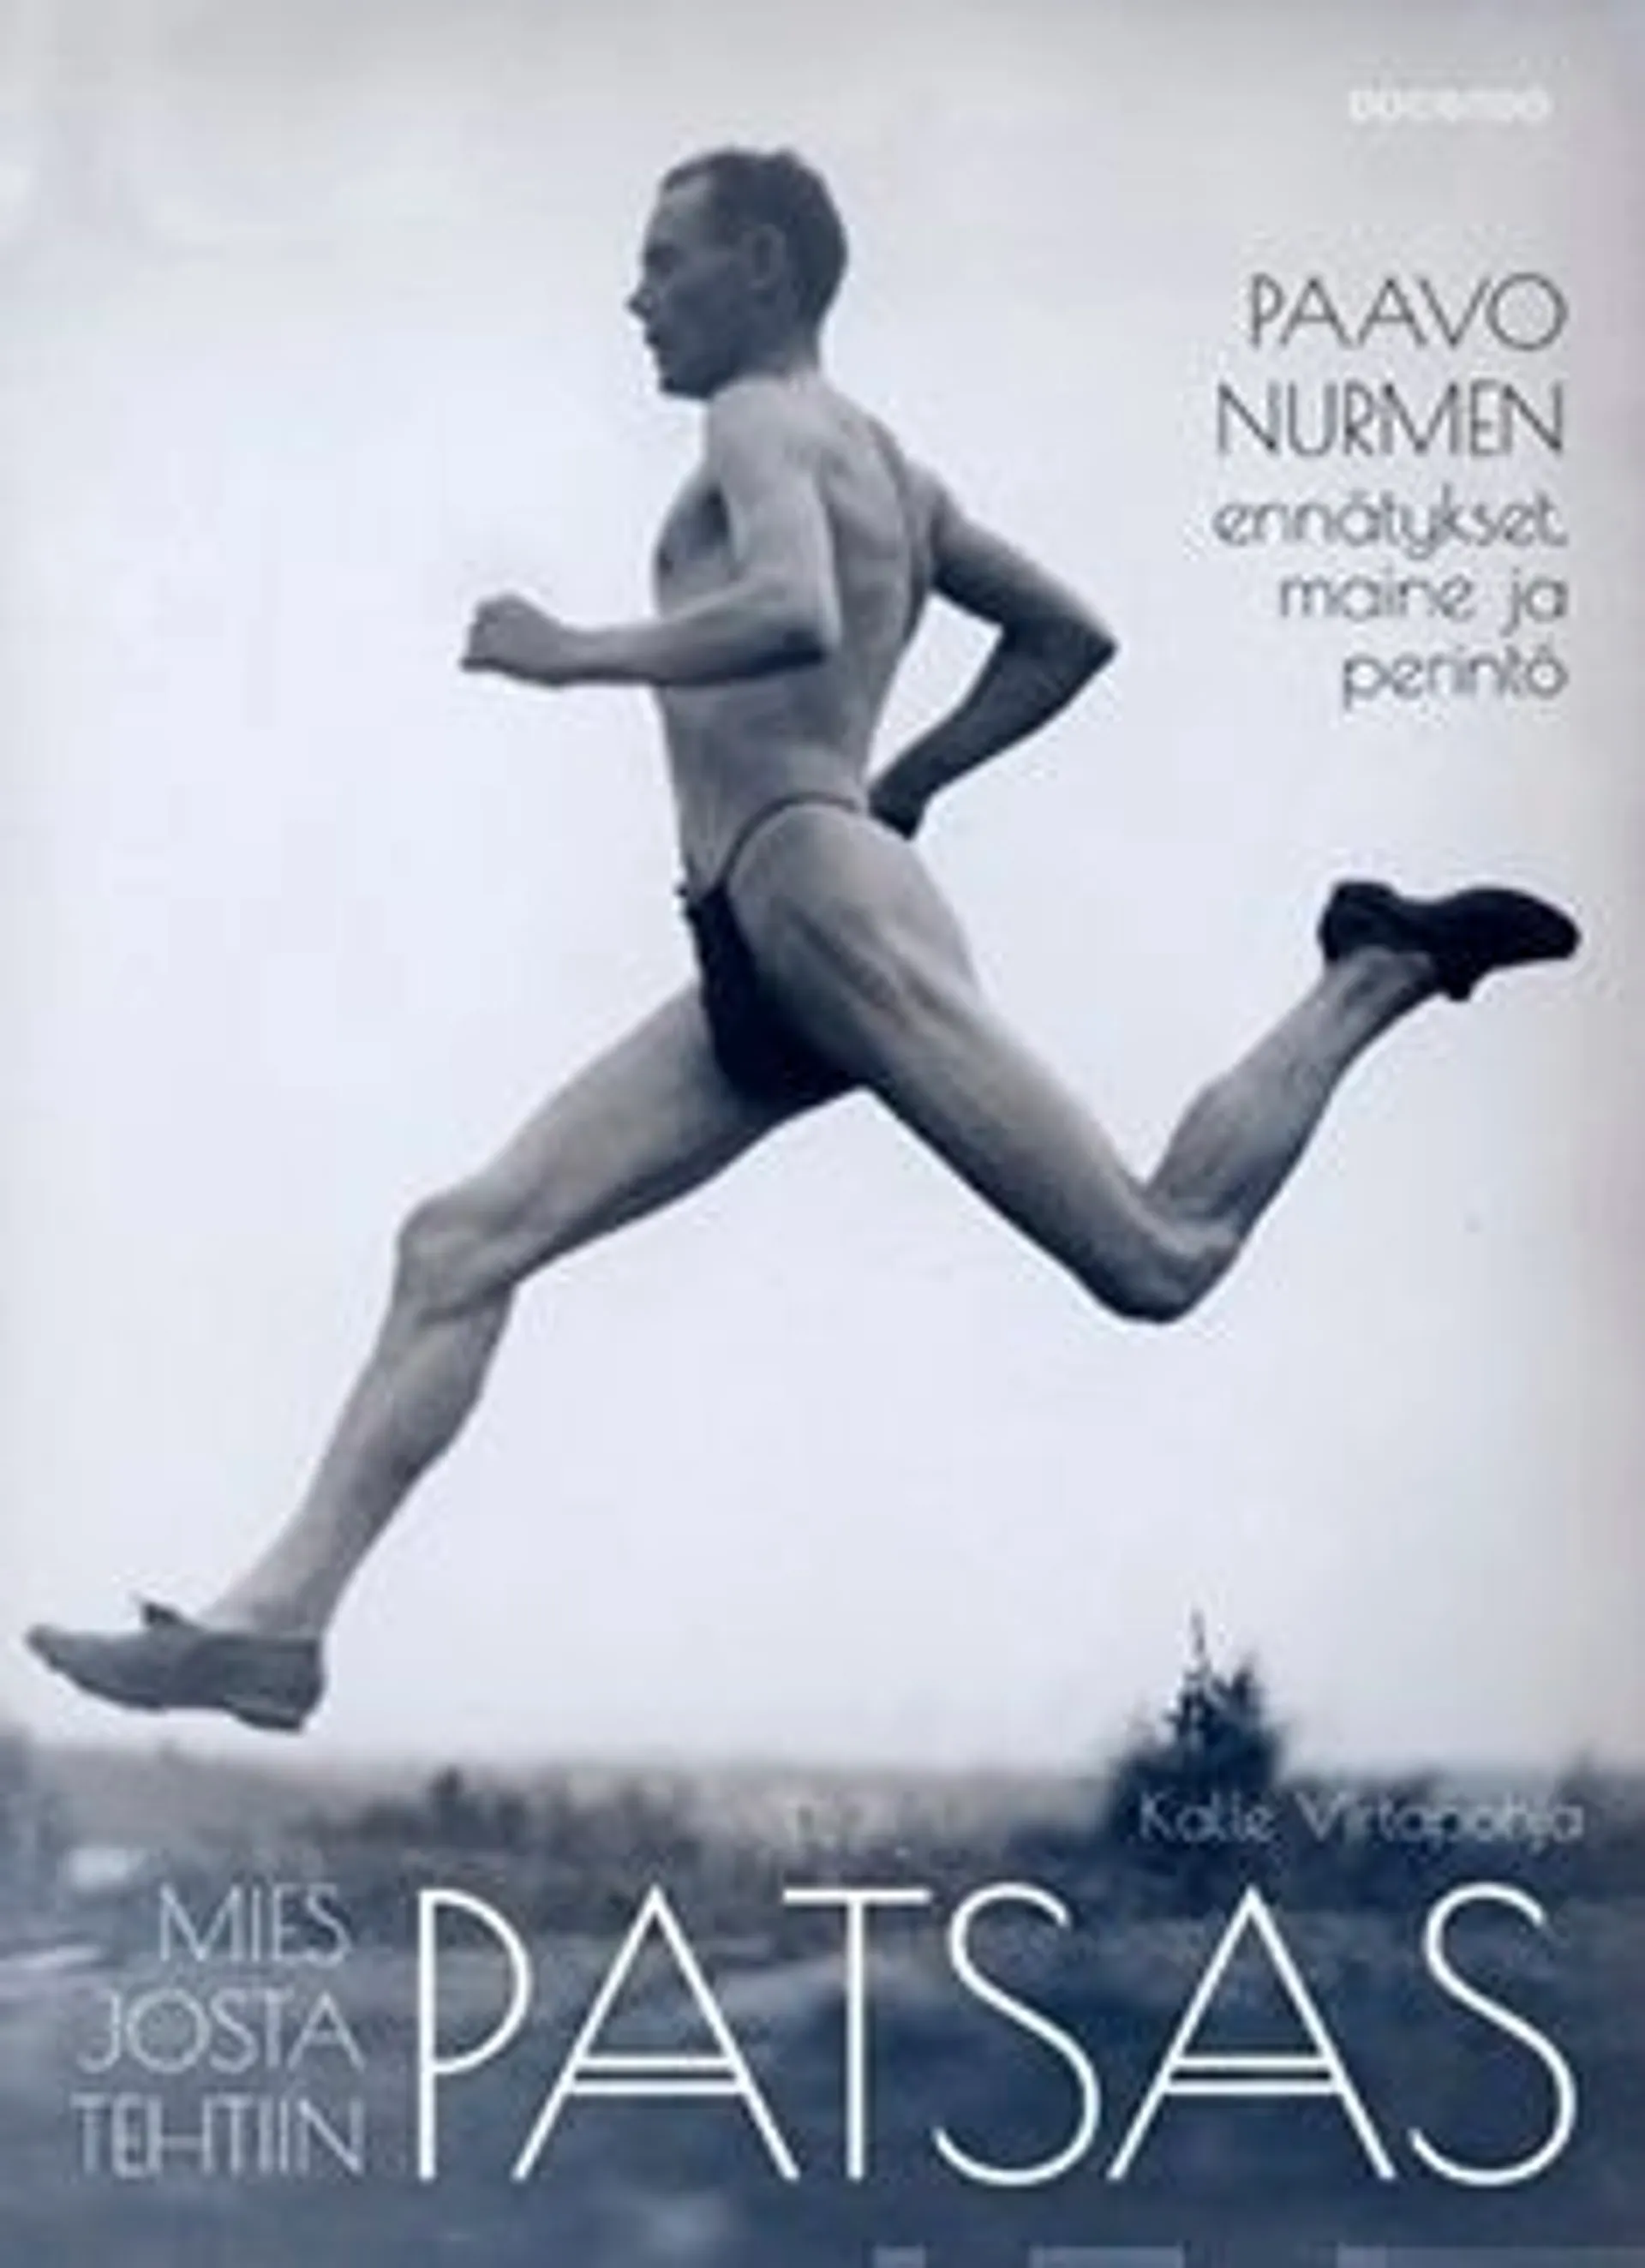 Virtapohja, Mies josta tehtiin patsas - Paavo Nurmen ennätykset, maine ja perintö